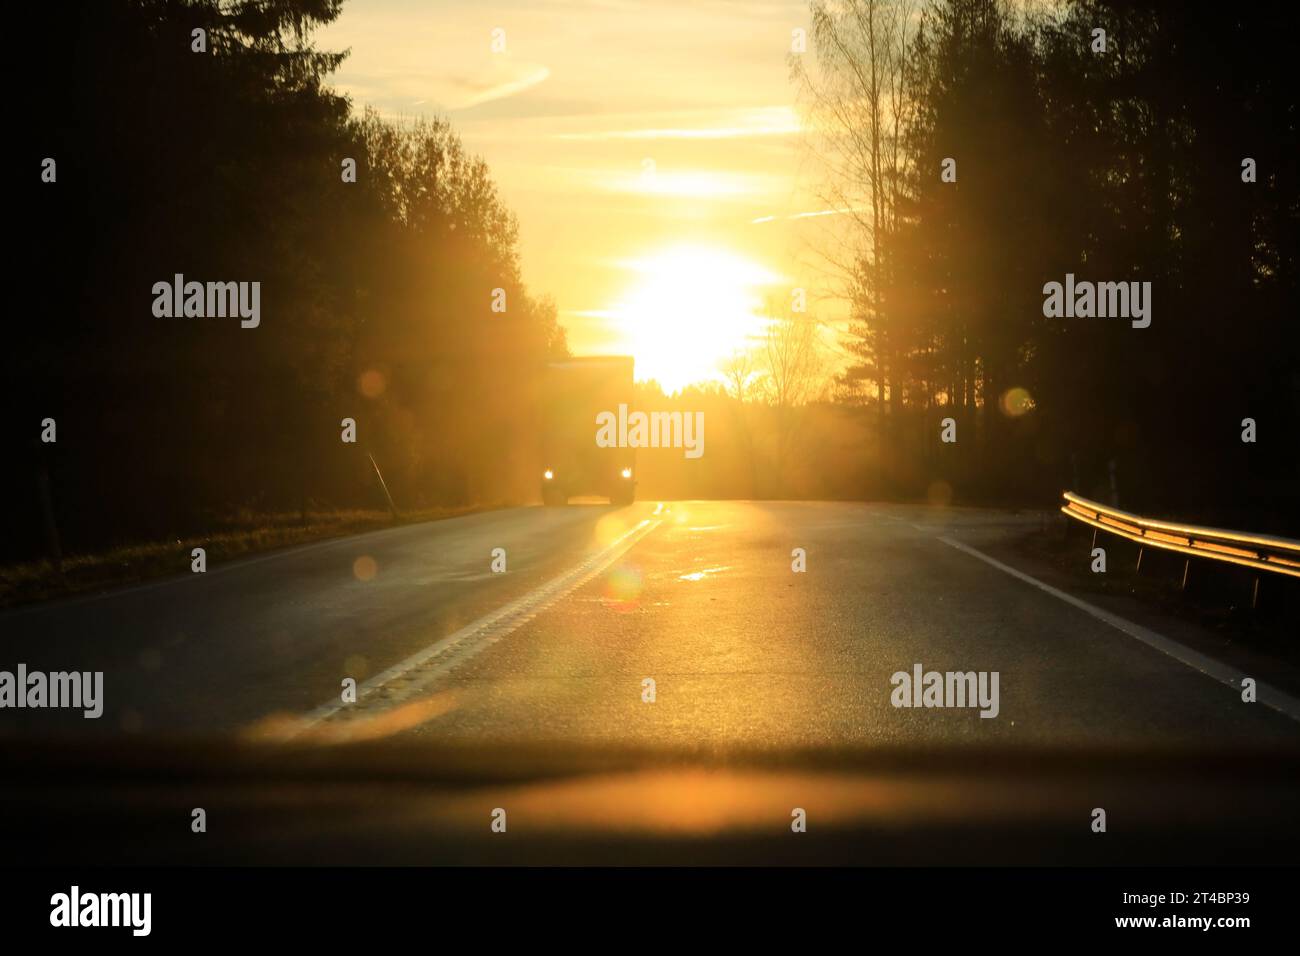 Fahren auf einer Landstraße gegen die aufgehende Sonne am Horizont mit einem entgegenkommenden schweren Lkw. Konzept für geringe Sicht. Stockfoto